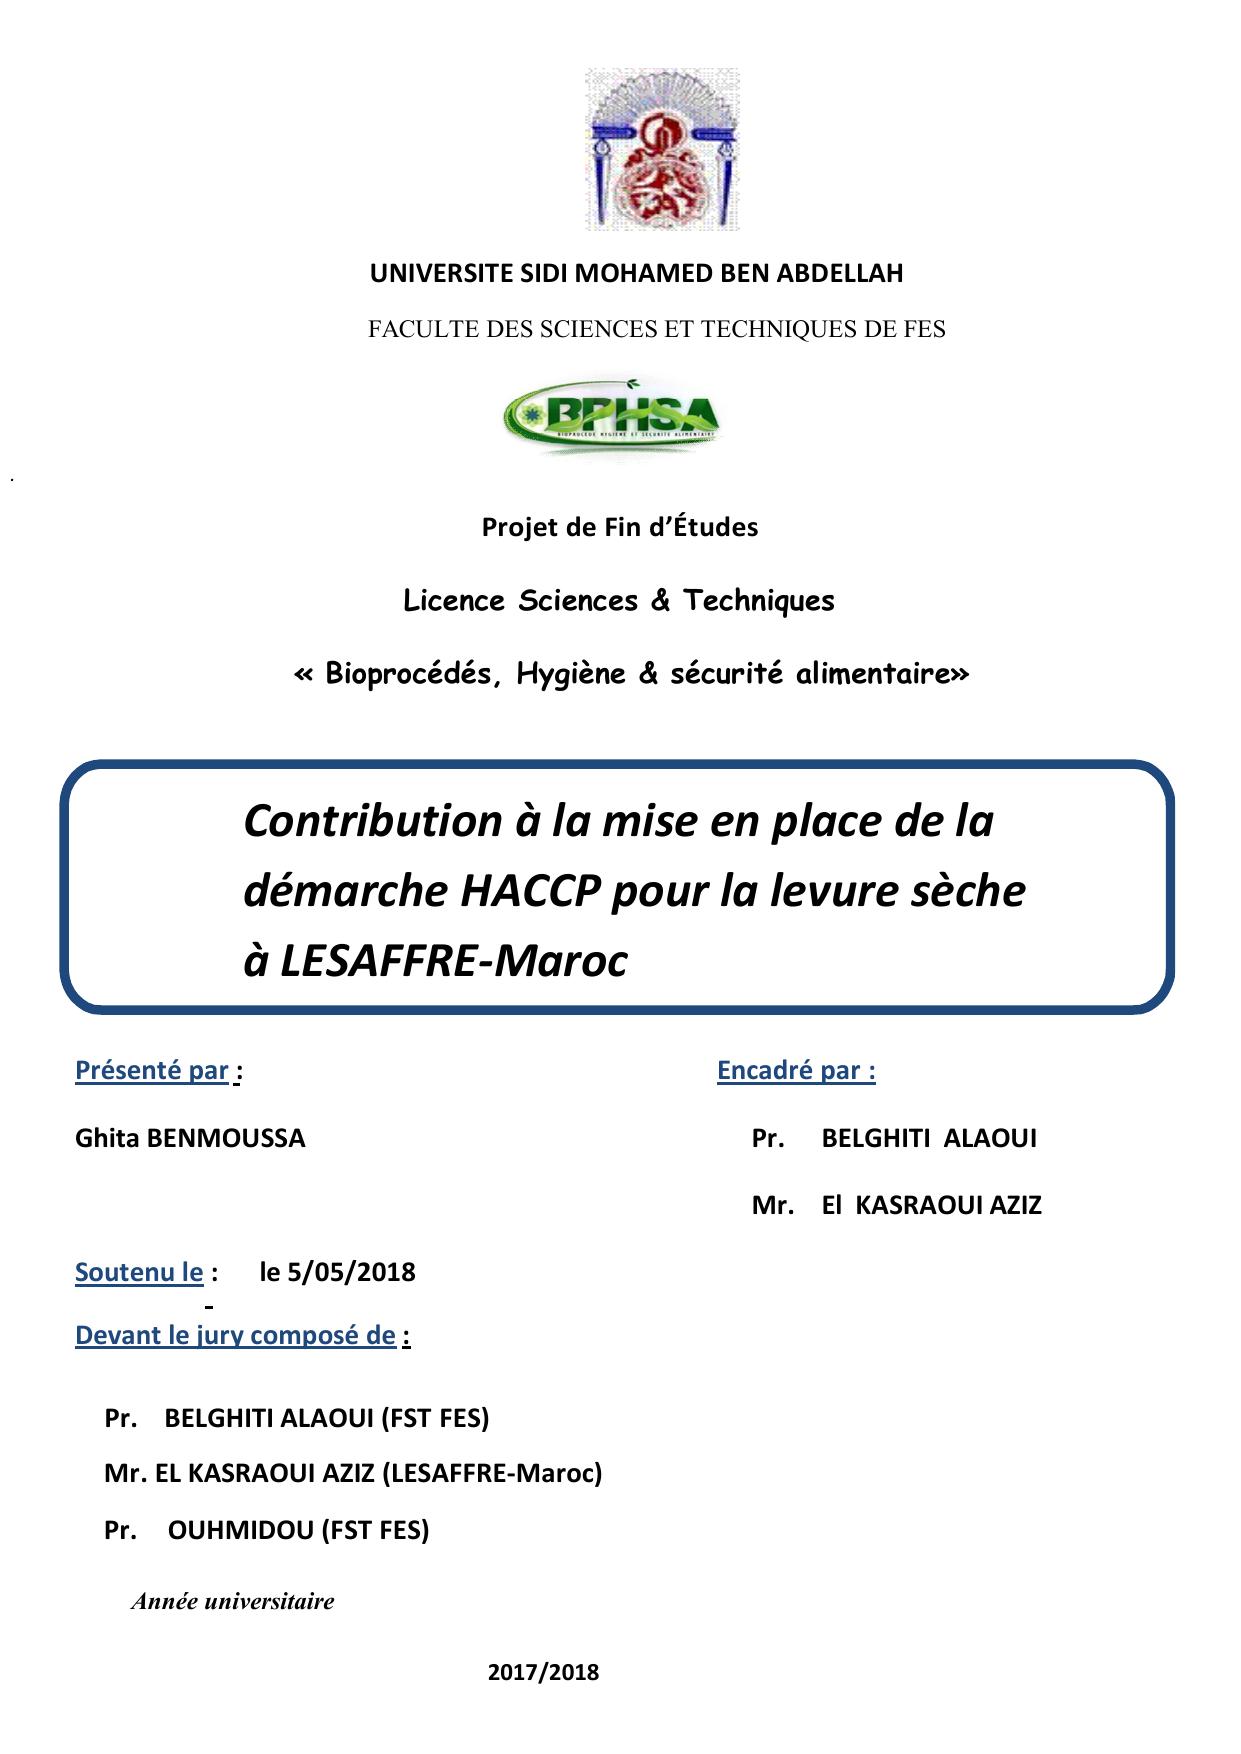 Contribution à la mise en place de la démarche HACCP pour la levure sèche à LESAFFRE-Maroc